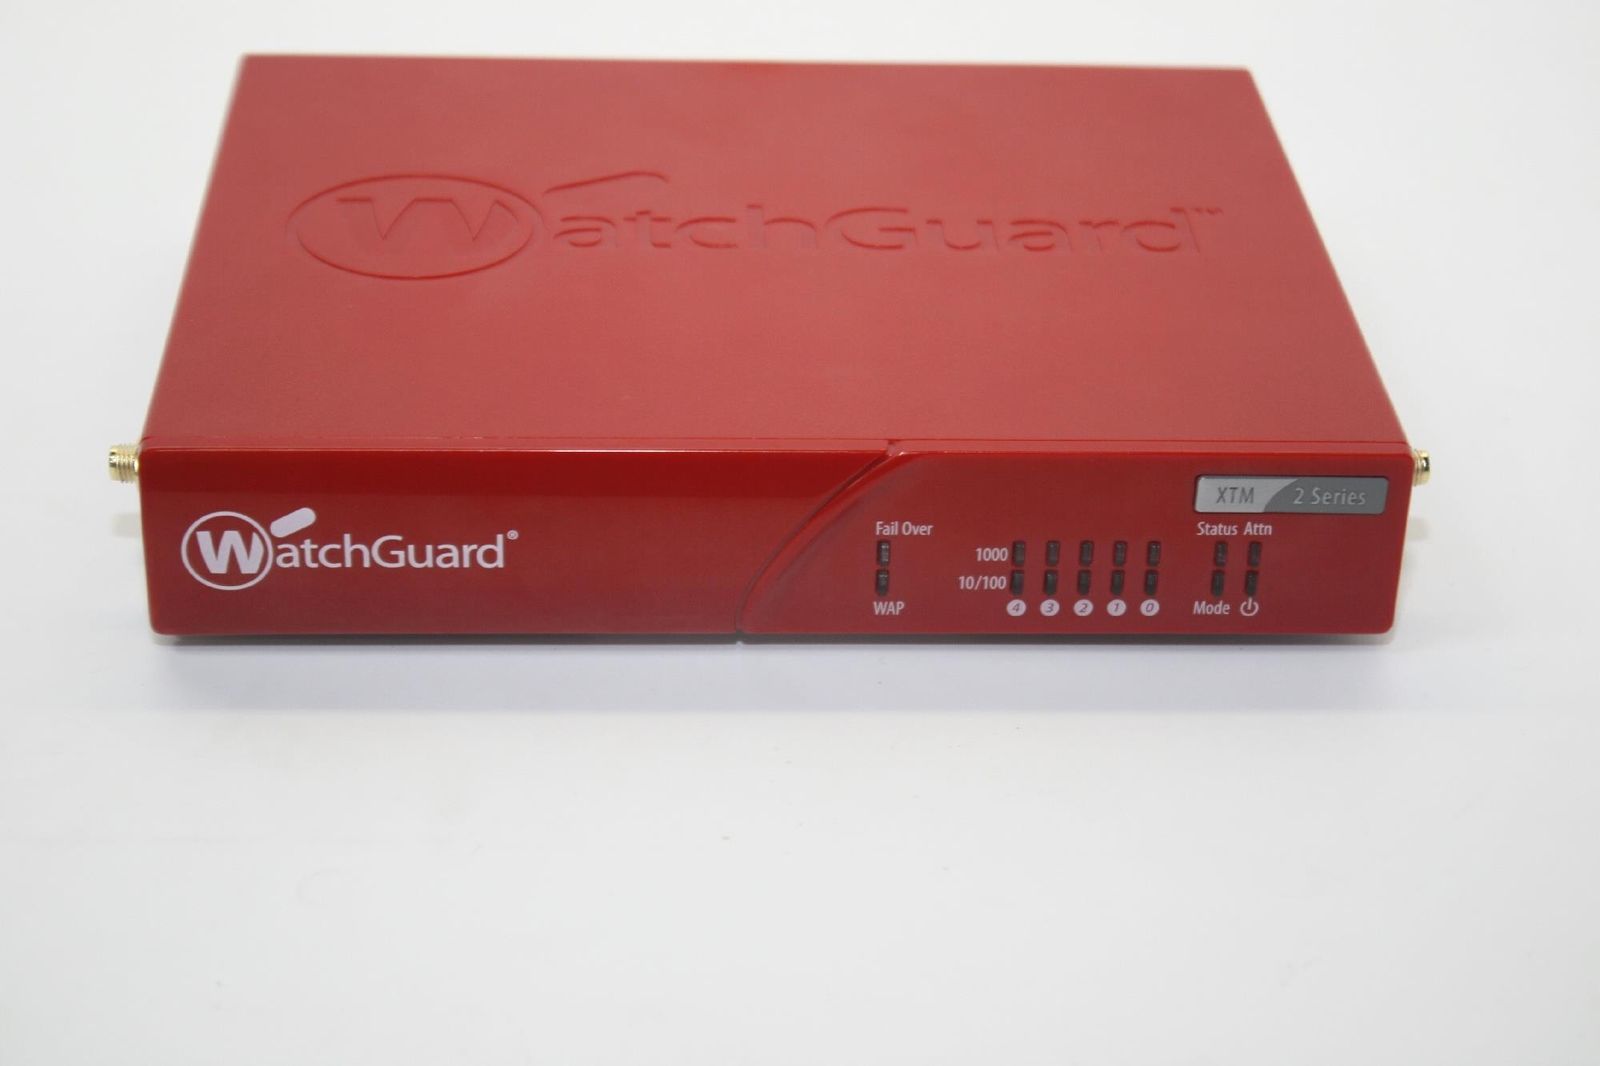 Watchguard WG026563 XTM 26-W Firewall Appliance - USADO